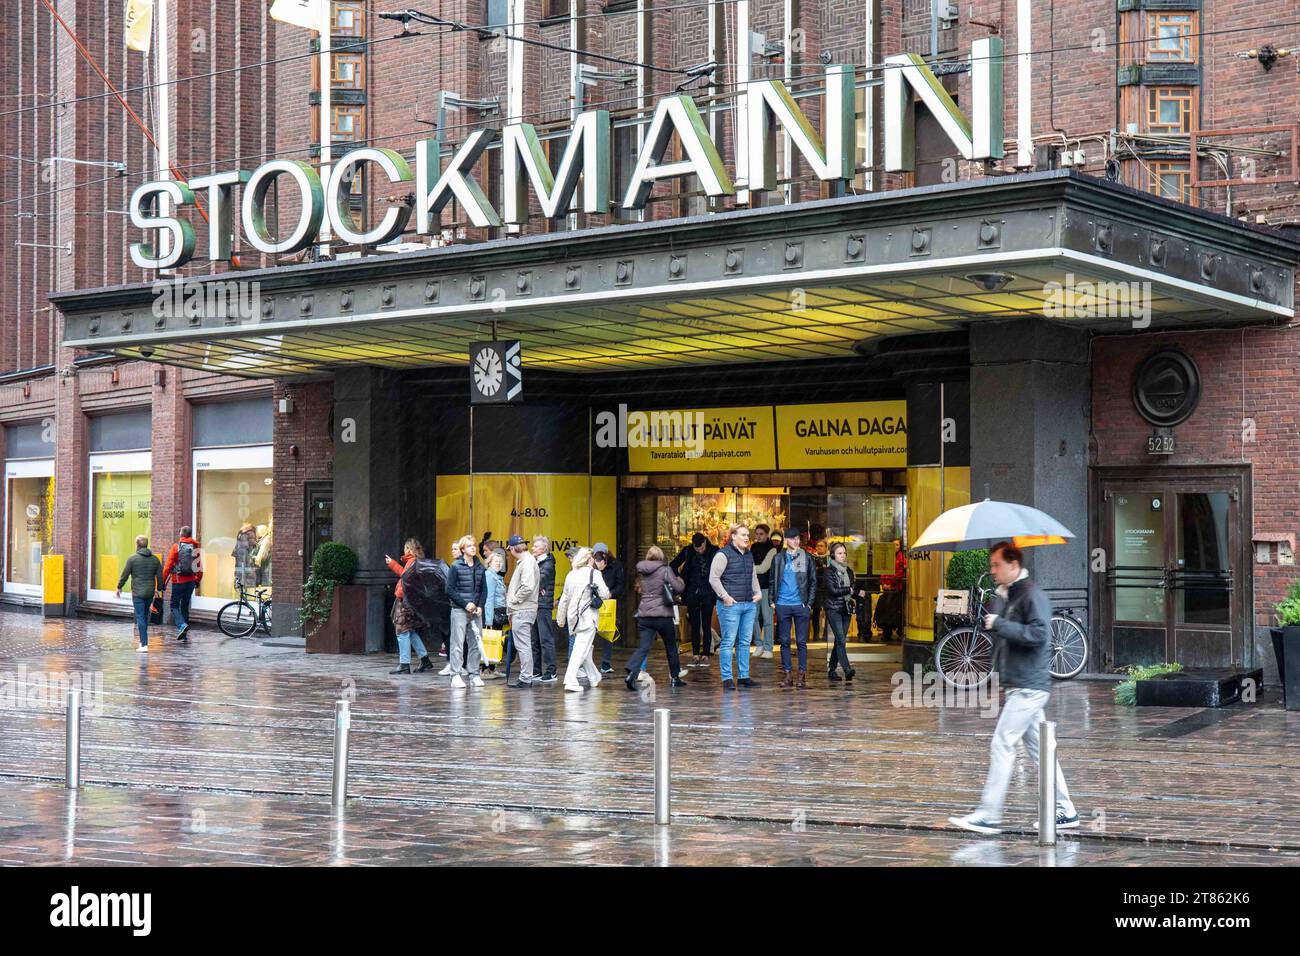 Des gens devant le grand magasin Stockmann un jour d'automne pluvieux à Helsinki, en Finlande Banque D'Images